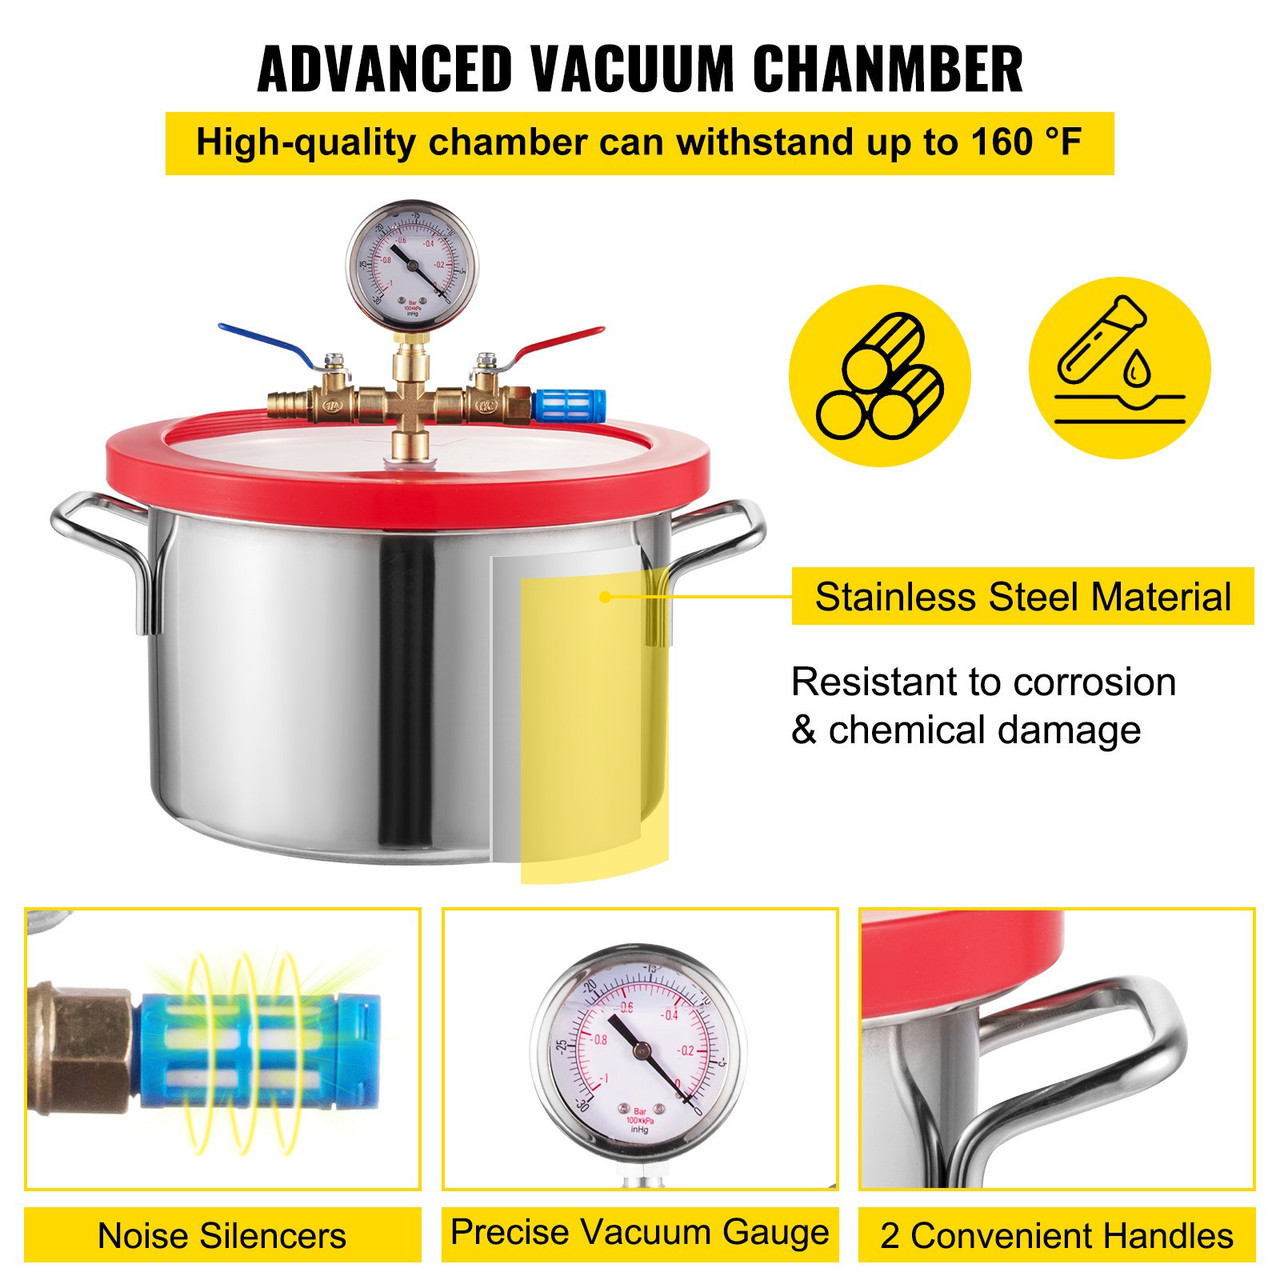 1 Gallon Vacuum Degassing Chamber Stainless Steel Degassing Chamber 3.8L Vacuum Chamber Kit with 3 CFM Single Stage Vacuum Pump(3CFM Vacuum Pump + 1 Gallon Vacuum Chamber)